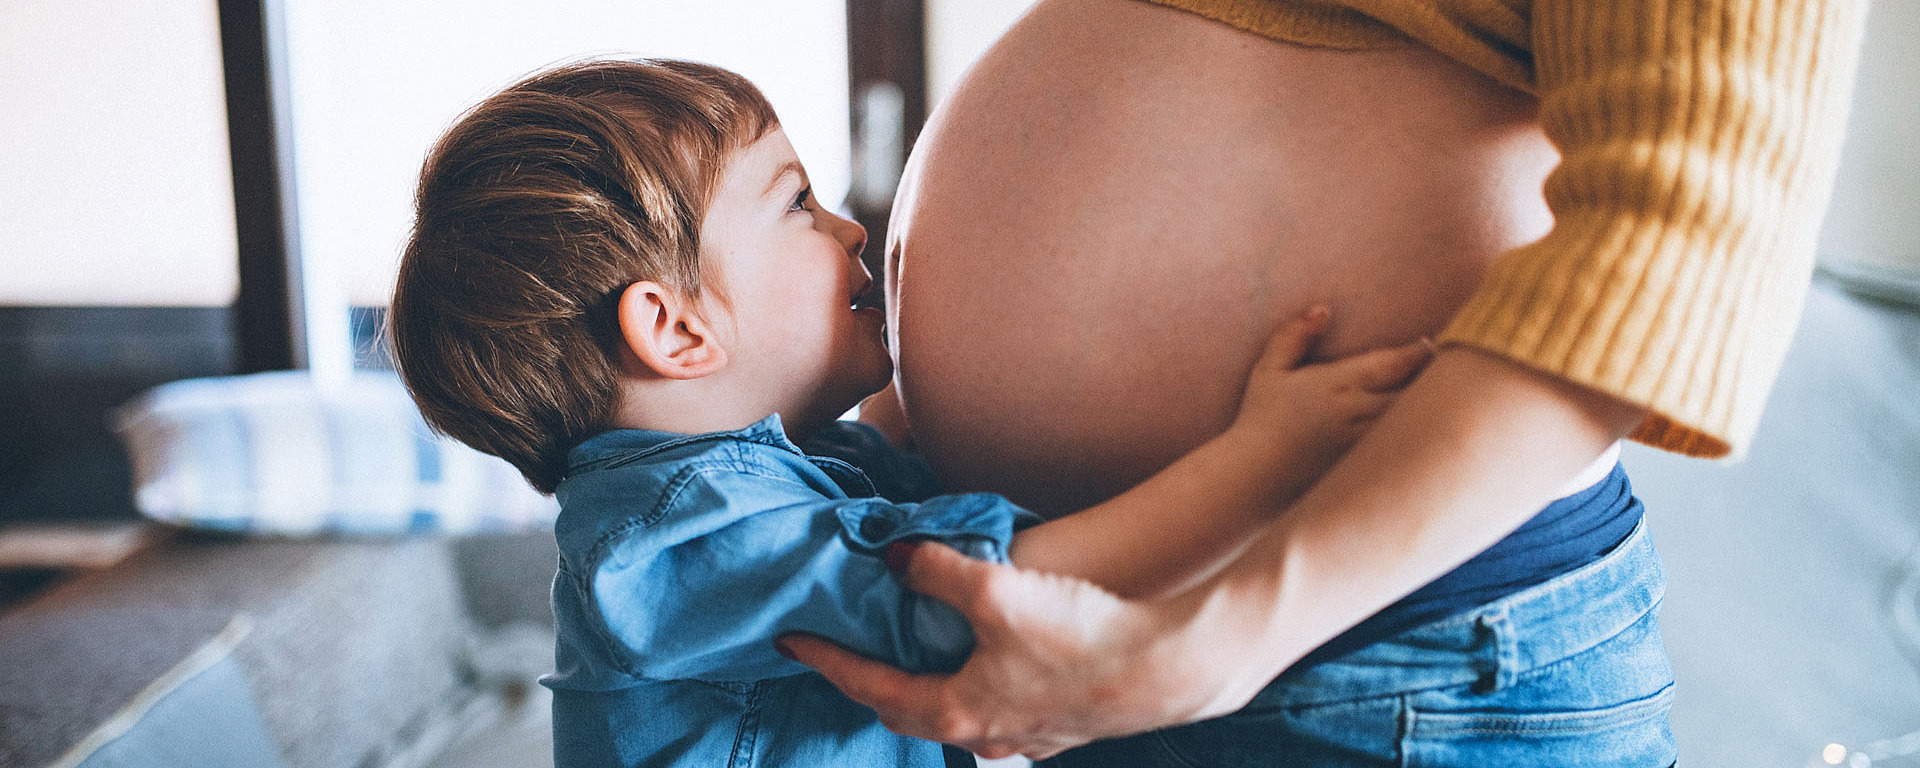 Ein kleiner Junge gibt seiner schwangeren Mama einen Kuss auf den Bauch.